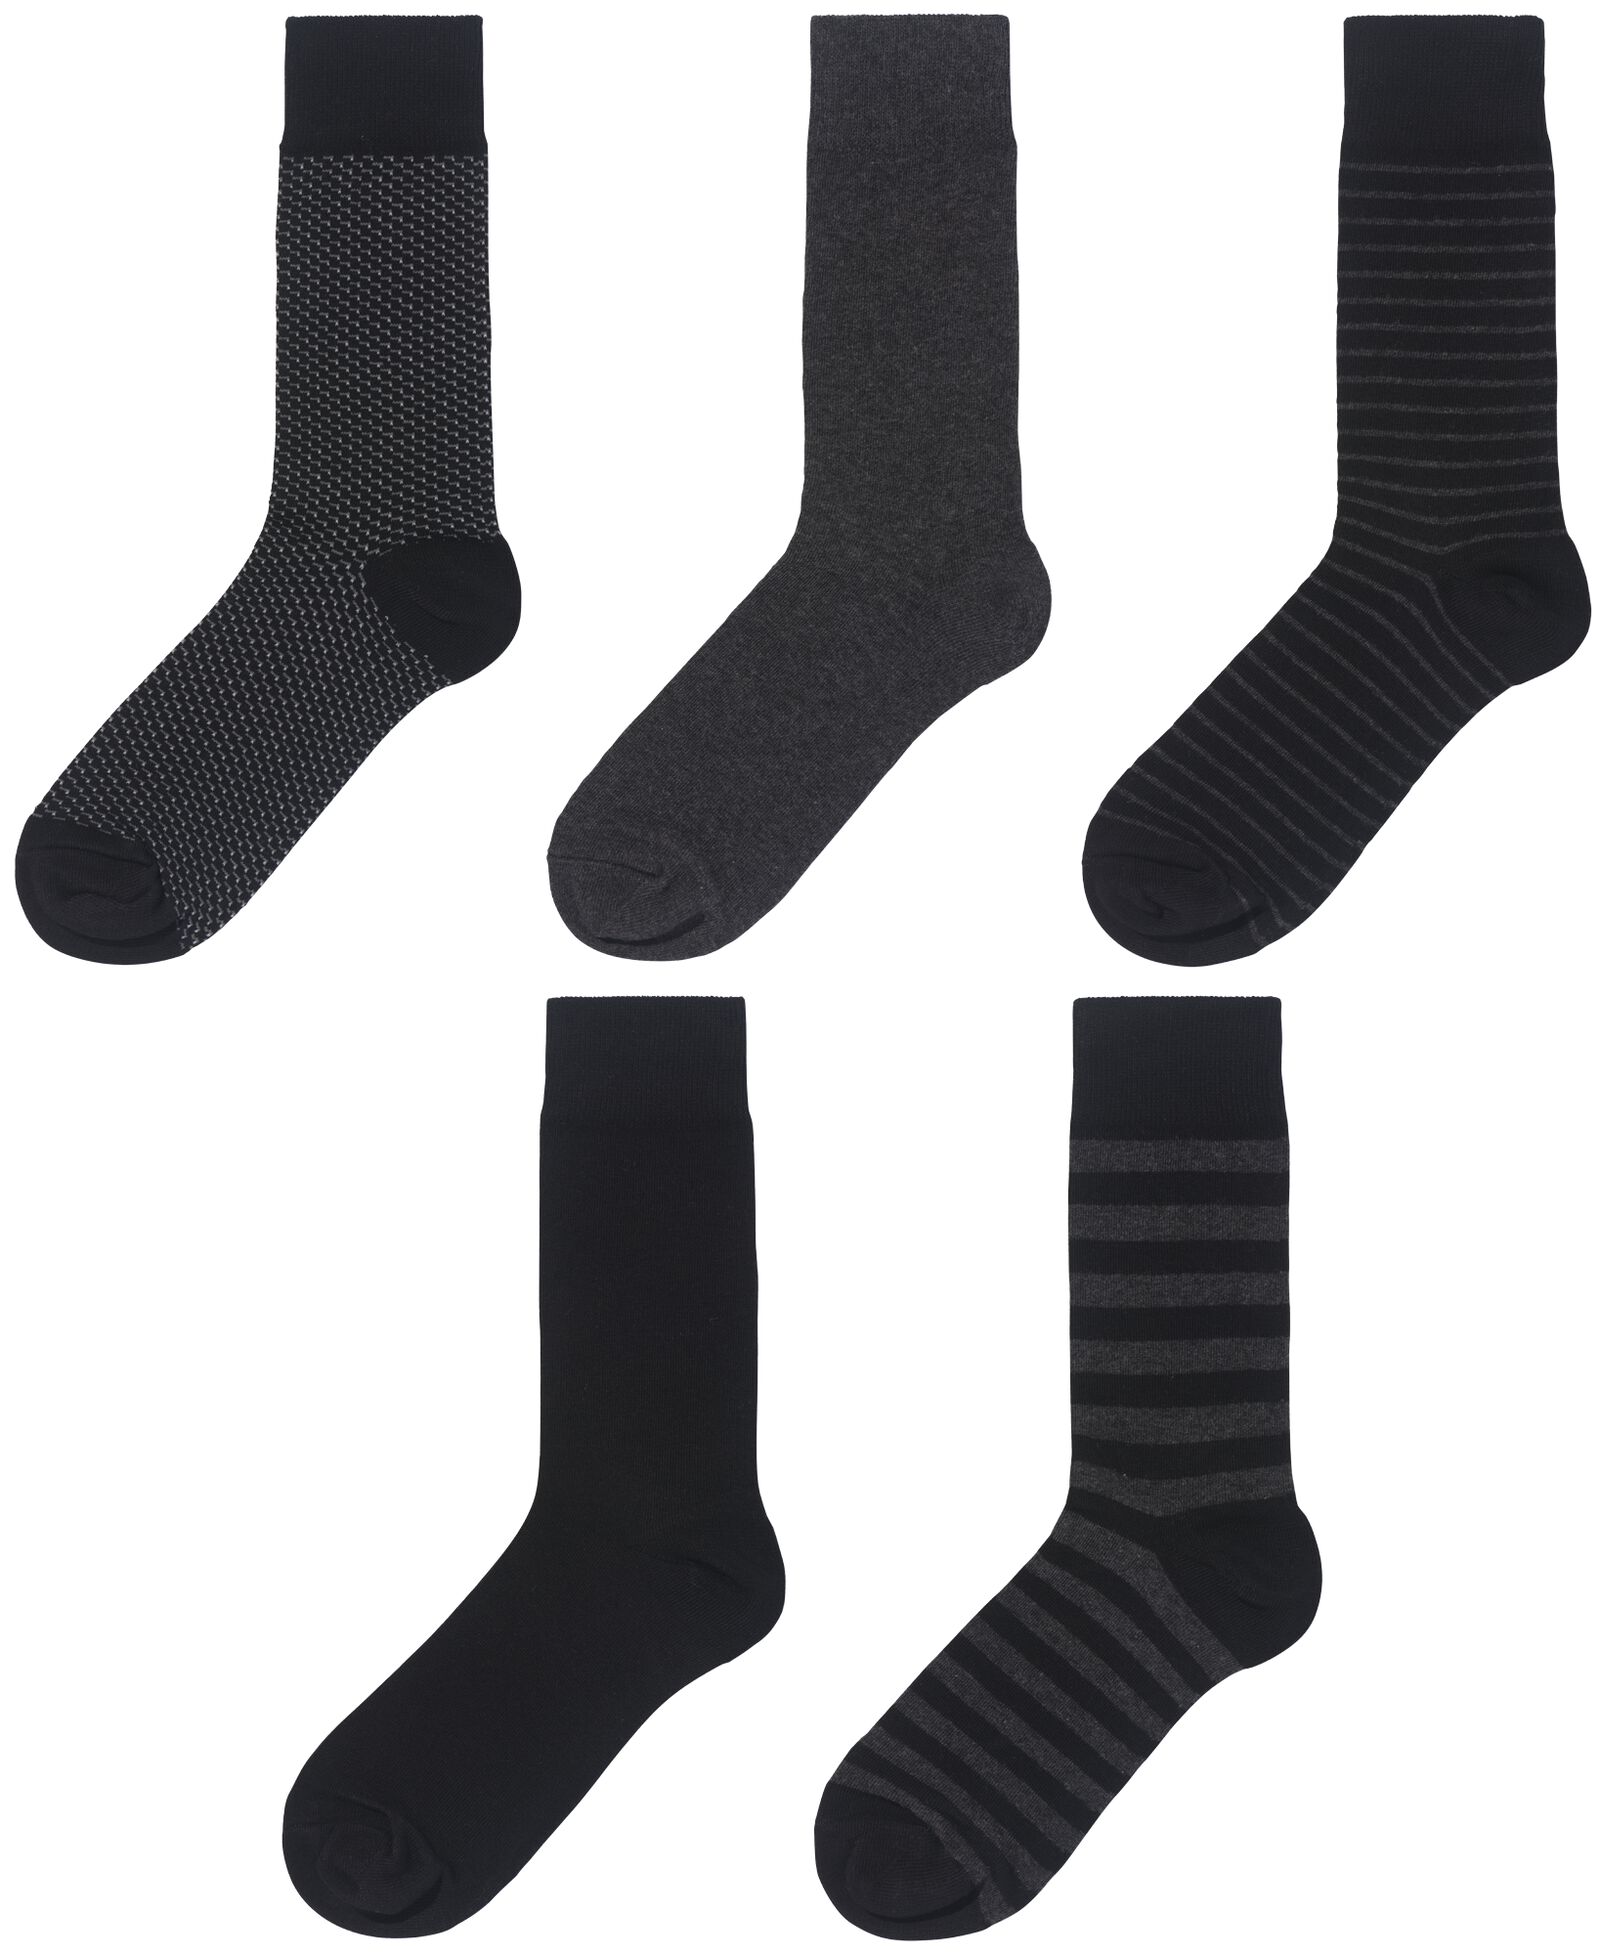 5 paires de chaussettes homme avec coton noir - HEMA